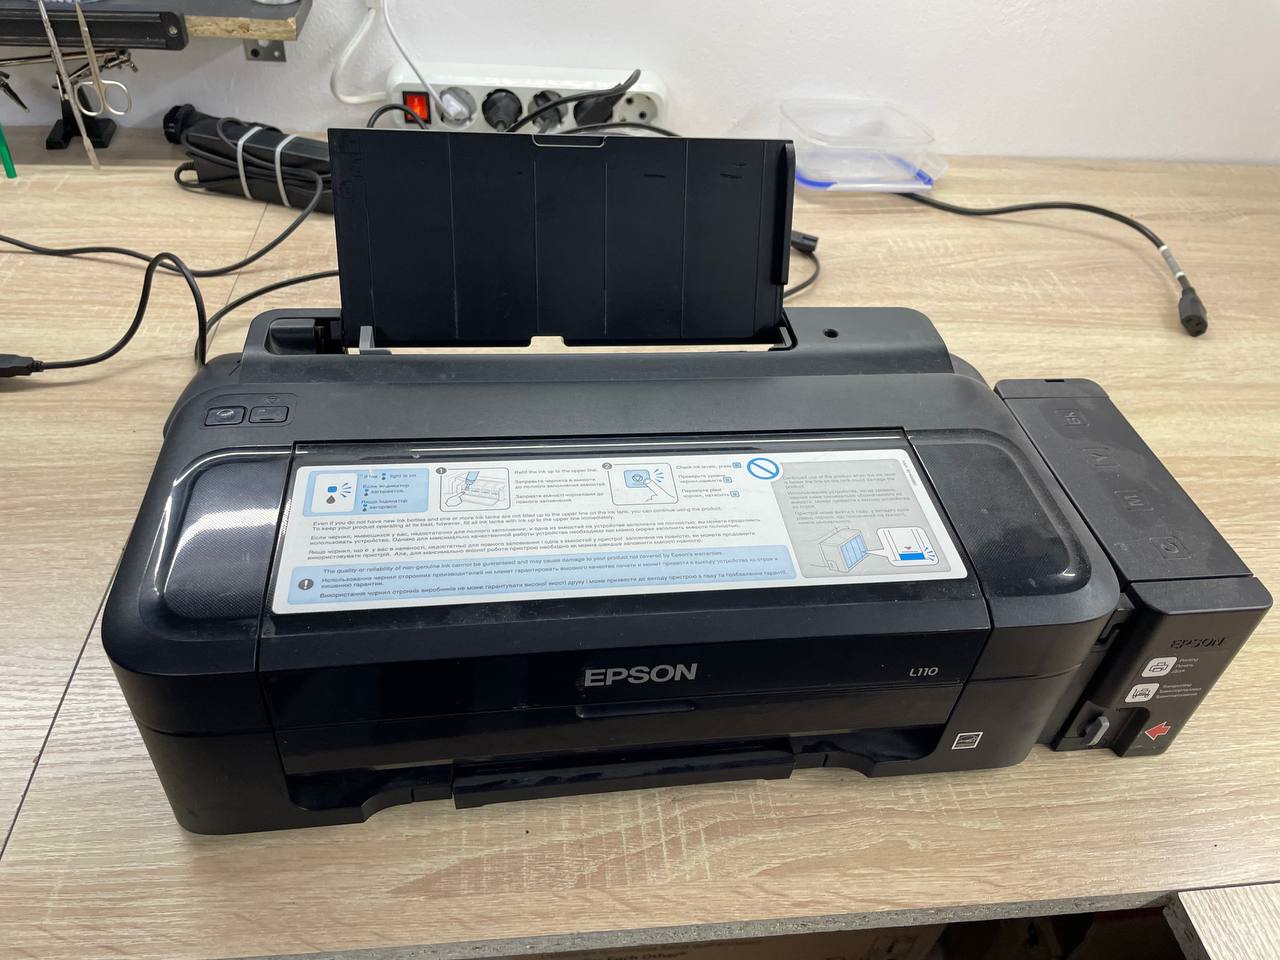 Ремонт принтера Epson L110, не включается